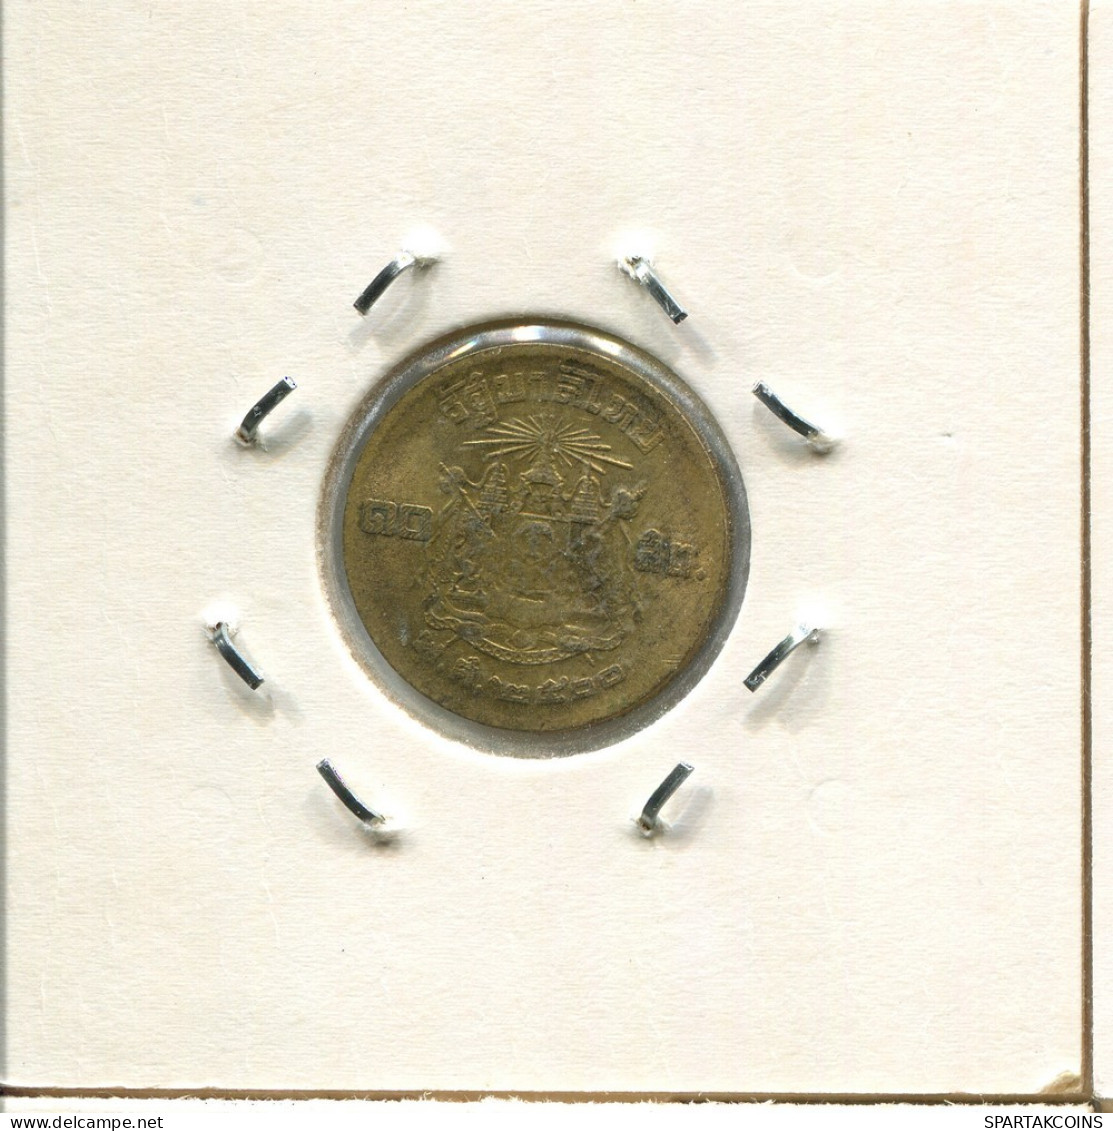 10 SATANGS 1957 THAILAND Coin #AR986.U.A - Thailand